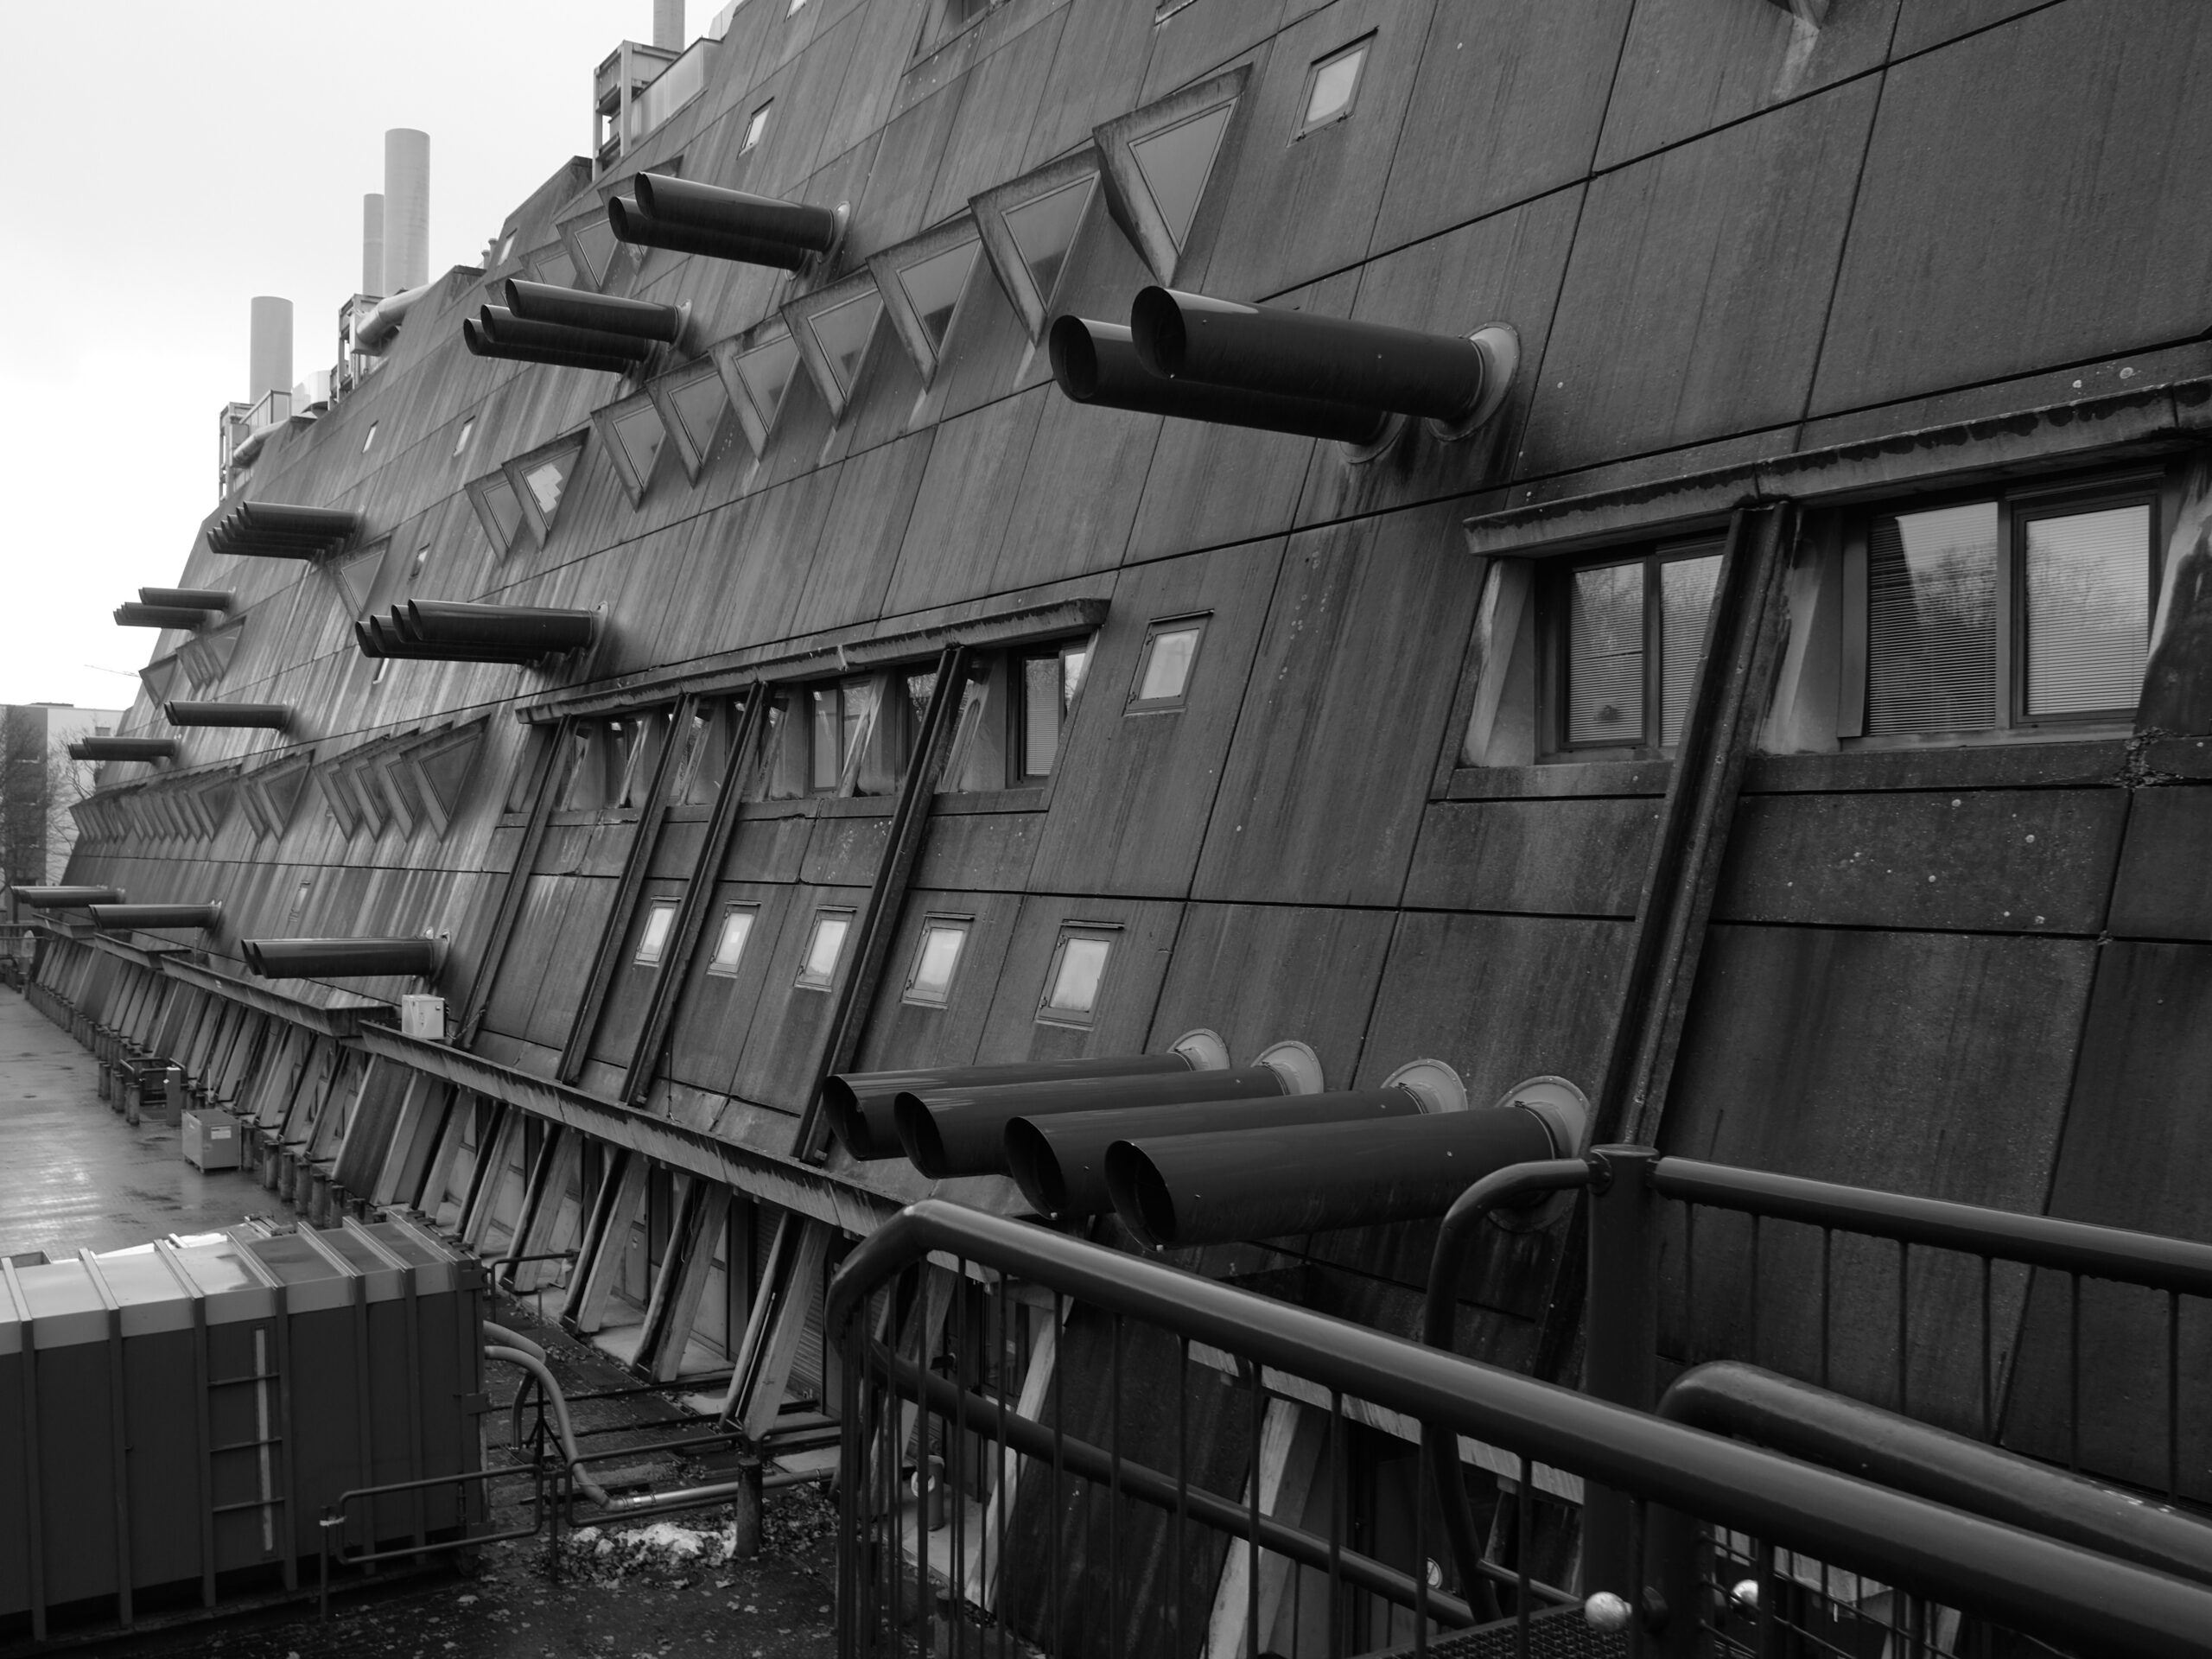 Eine Seite eines brutalistischen Gebäudes in Schwarz-Weiß. Lange Lüftungsrohre ragen aus der angeschrägten Beton-Fassade.